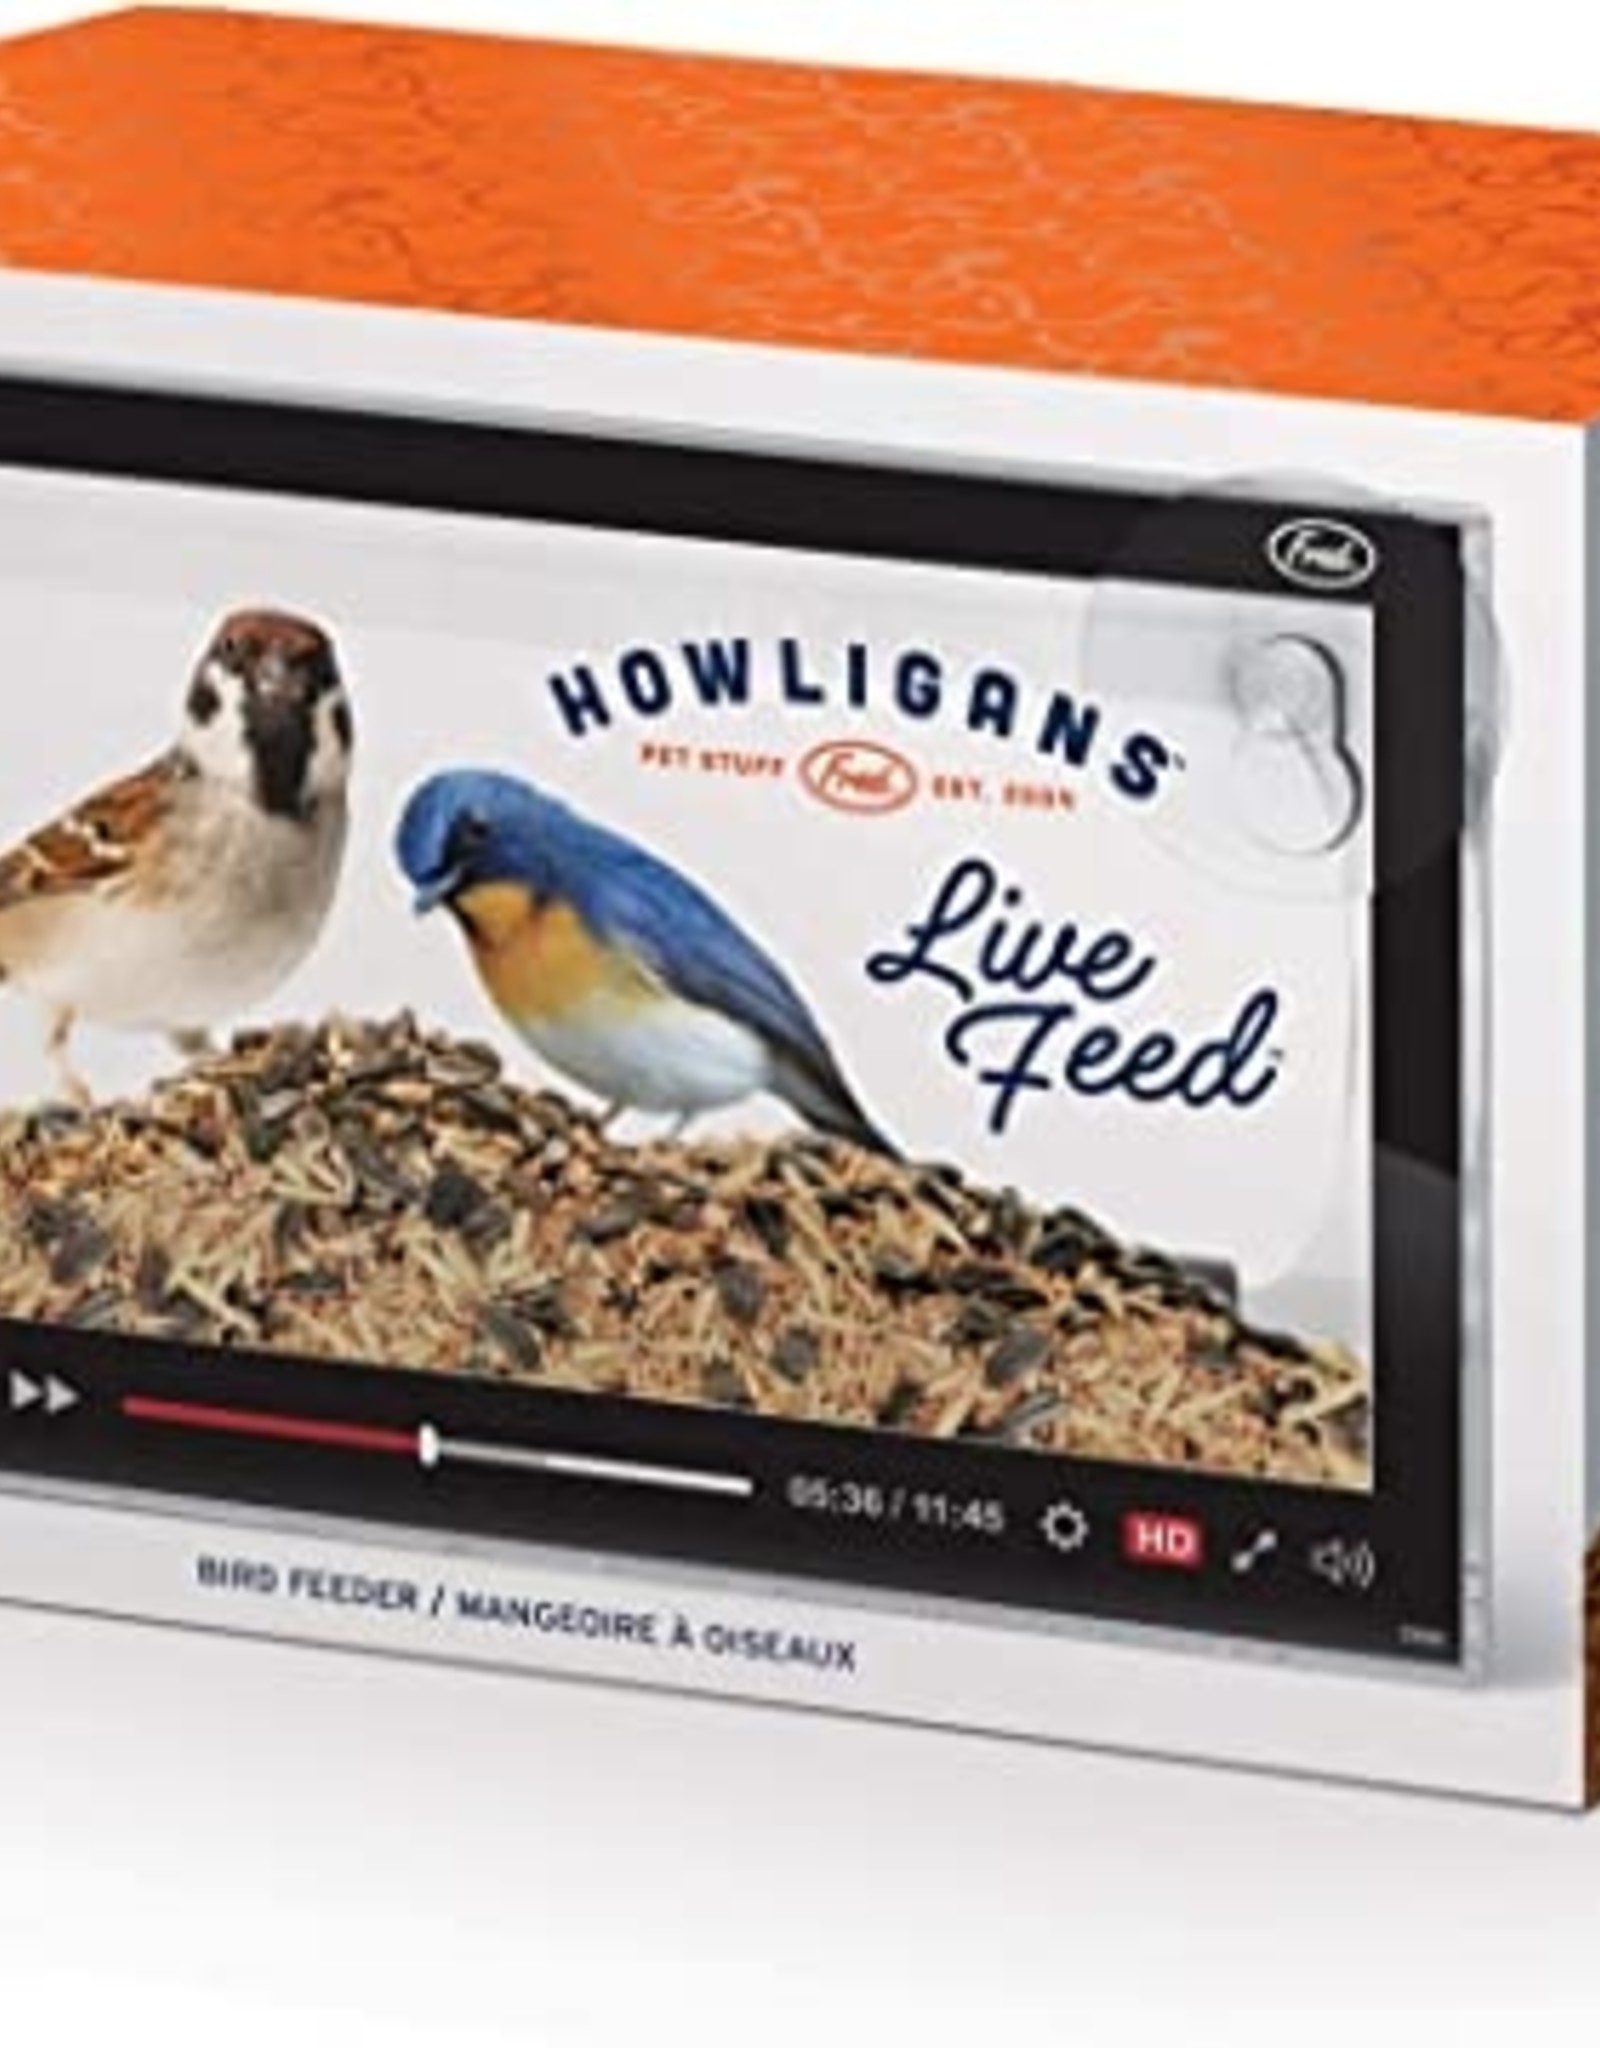 Fred Howligans - Bird Feeder - Live Feed L - Awesome Brooklyn